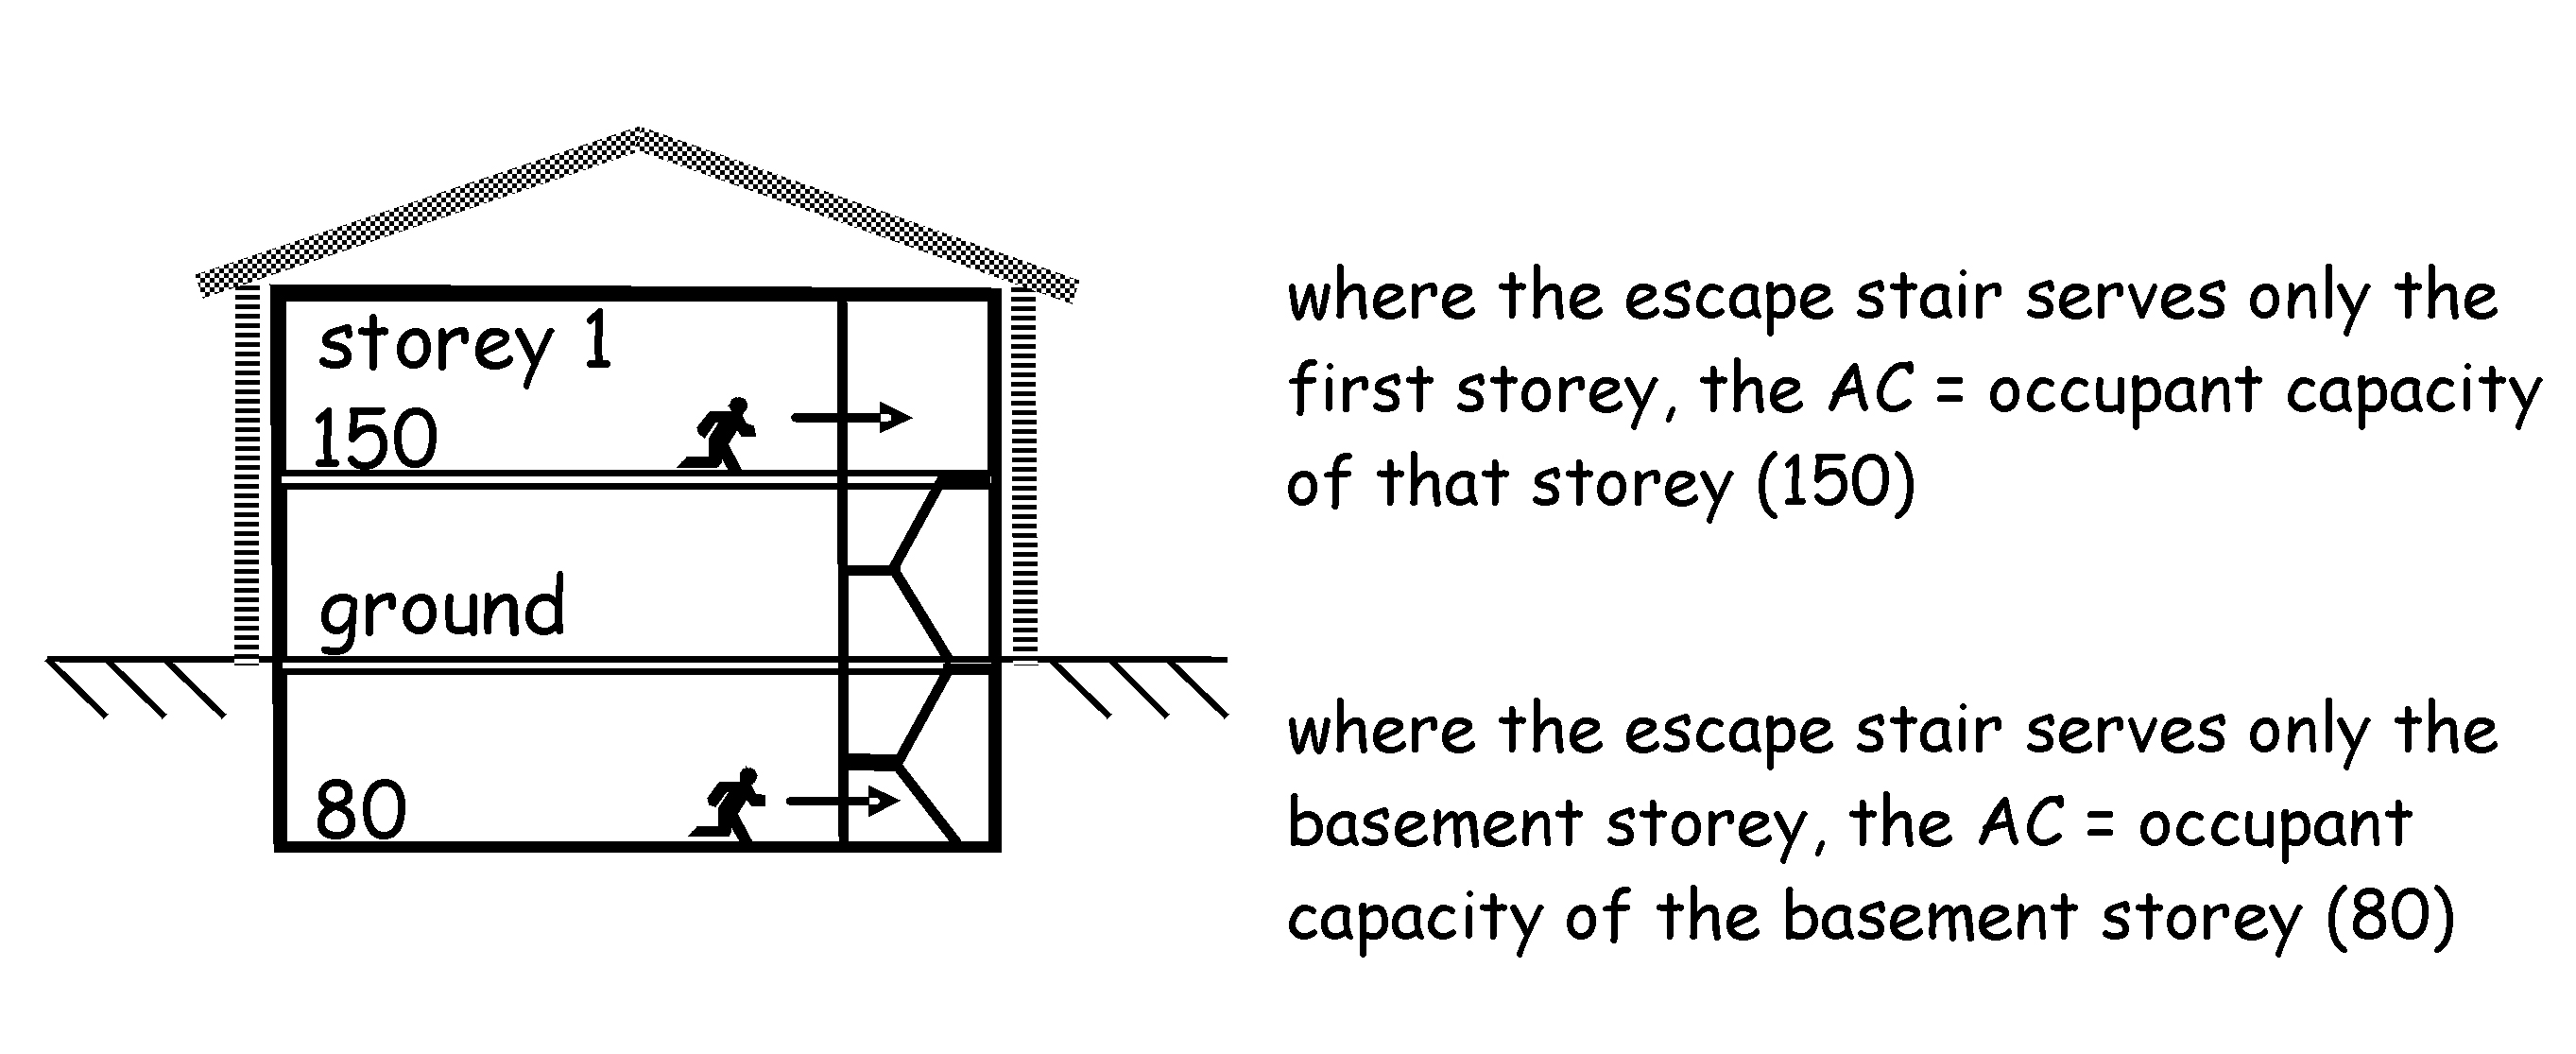 One storey example